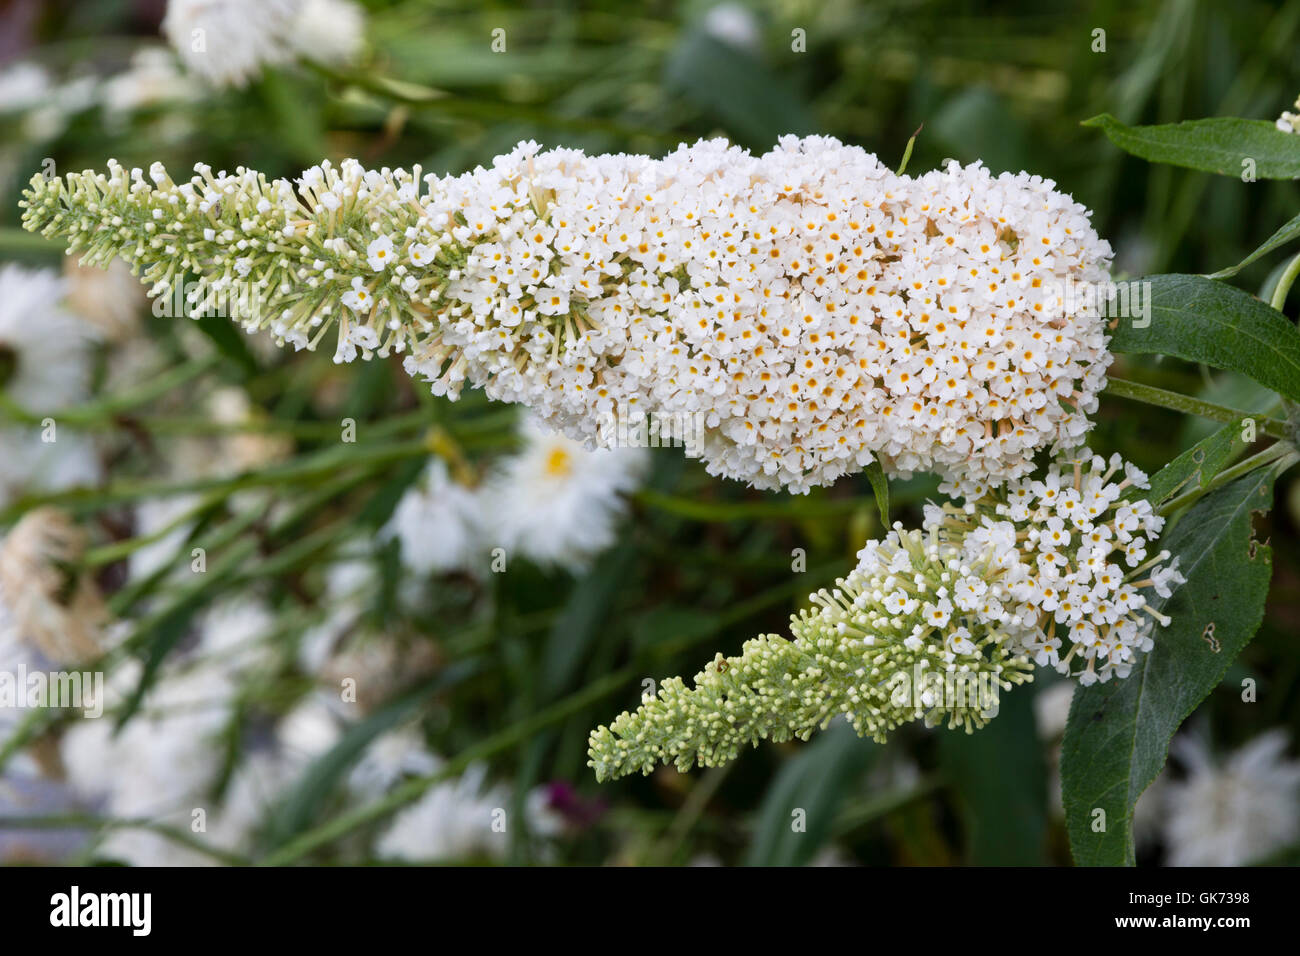 Duftende weiße Blüten von der kompakten Schmetterlingsstrauch Buddleja Davidii "Buzz Elfenbein" Stockfoto